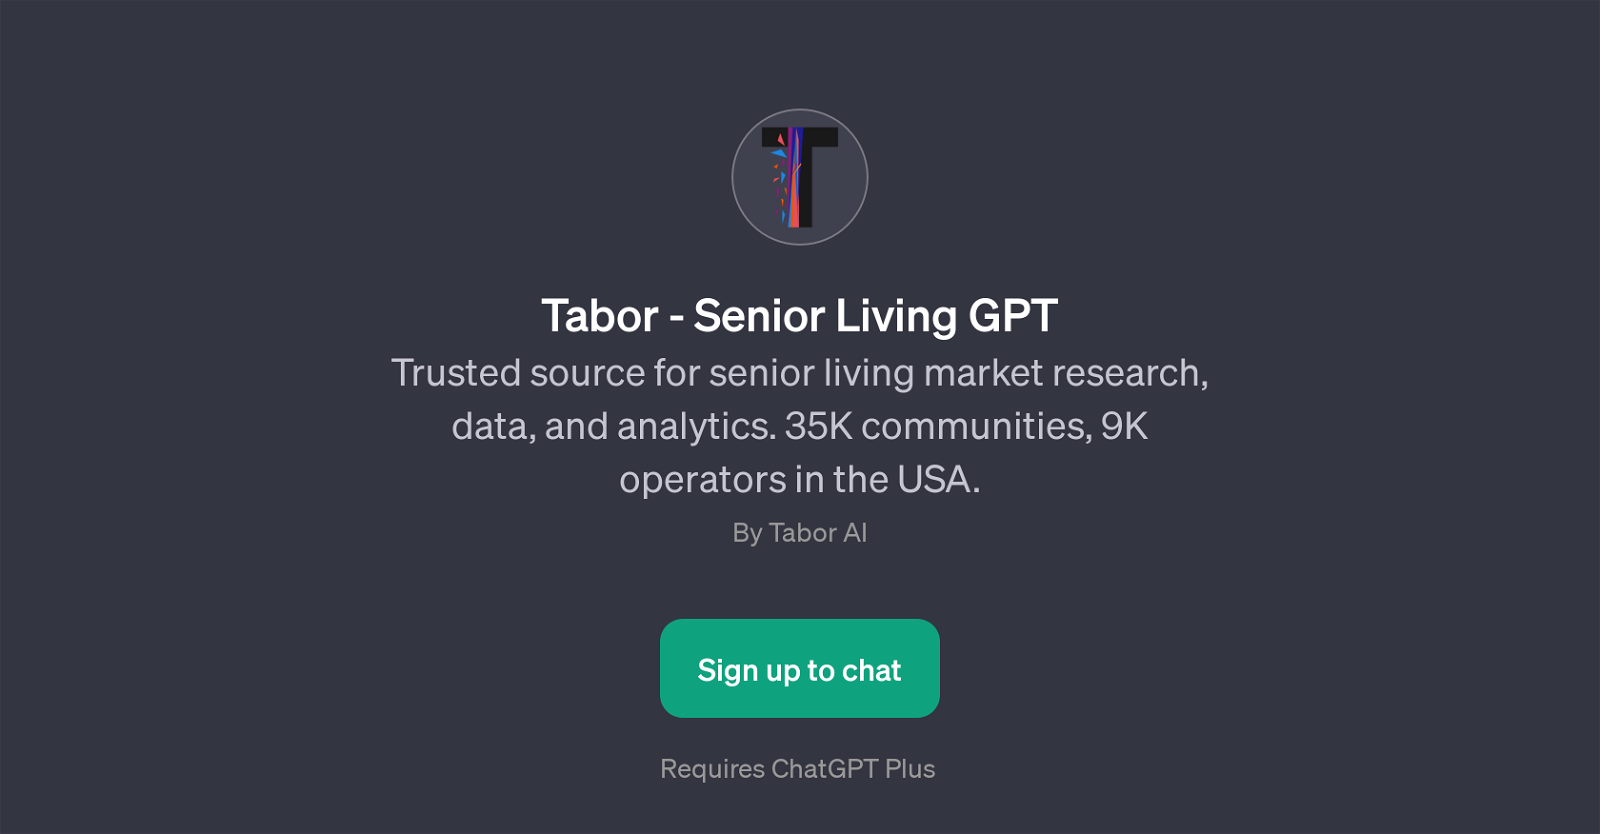 Tabor - Senior Living GPT website